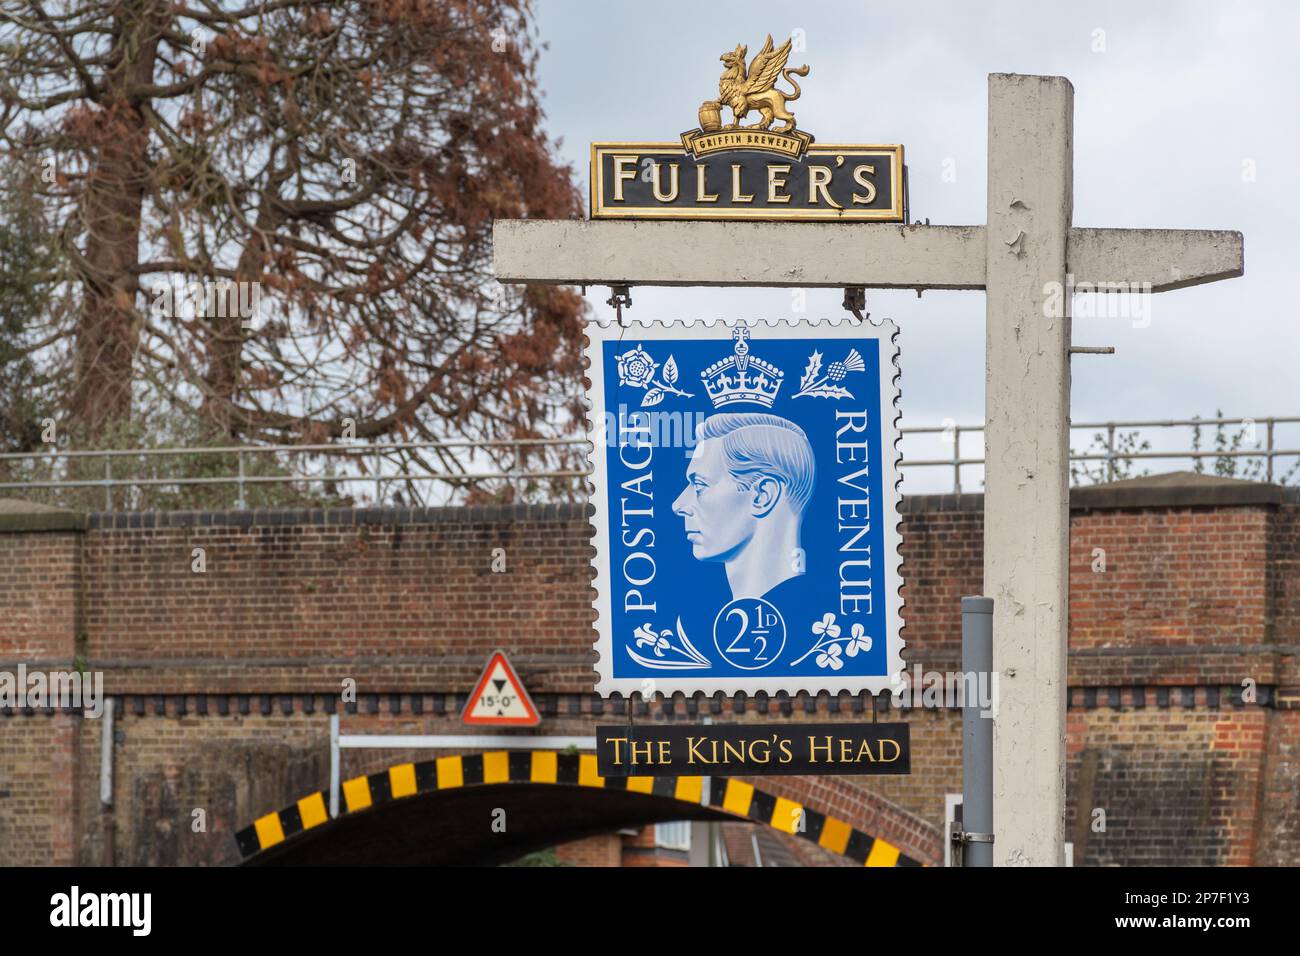 The King's Head pub con un'insegna stravagante a forma di francobollo, Guildford, Surrey, Inghilterra, Regno Unito Foto Stock